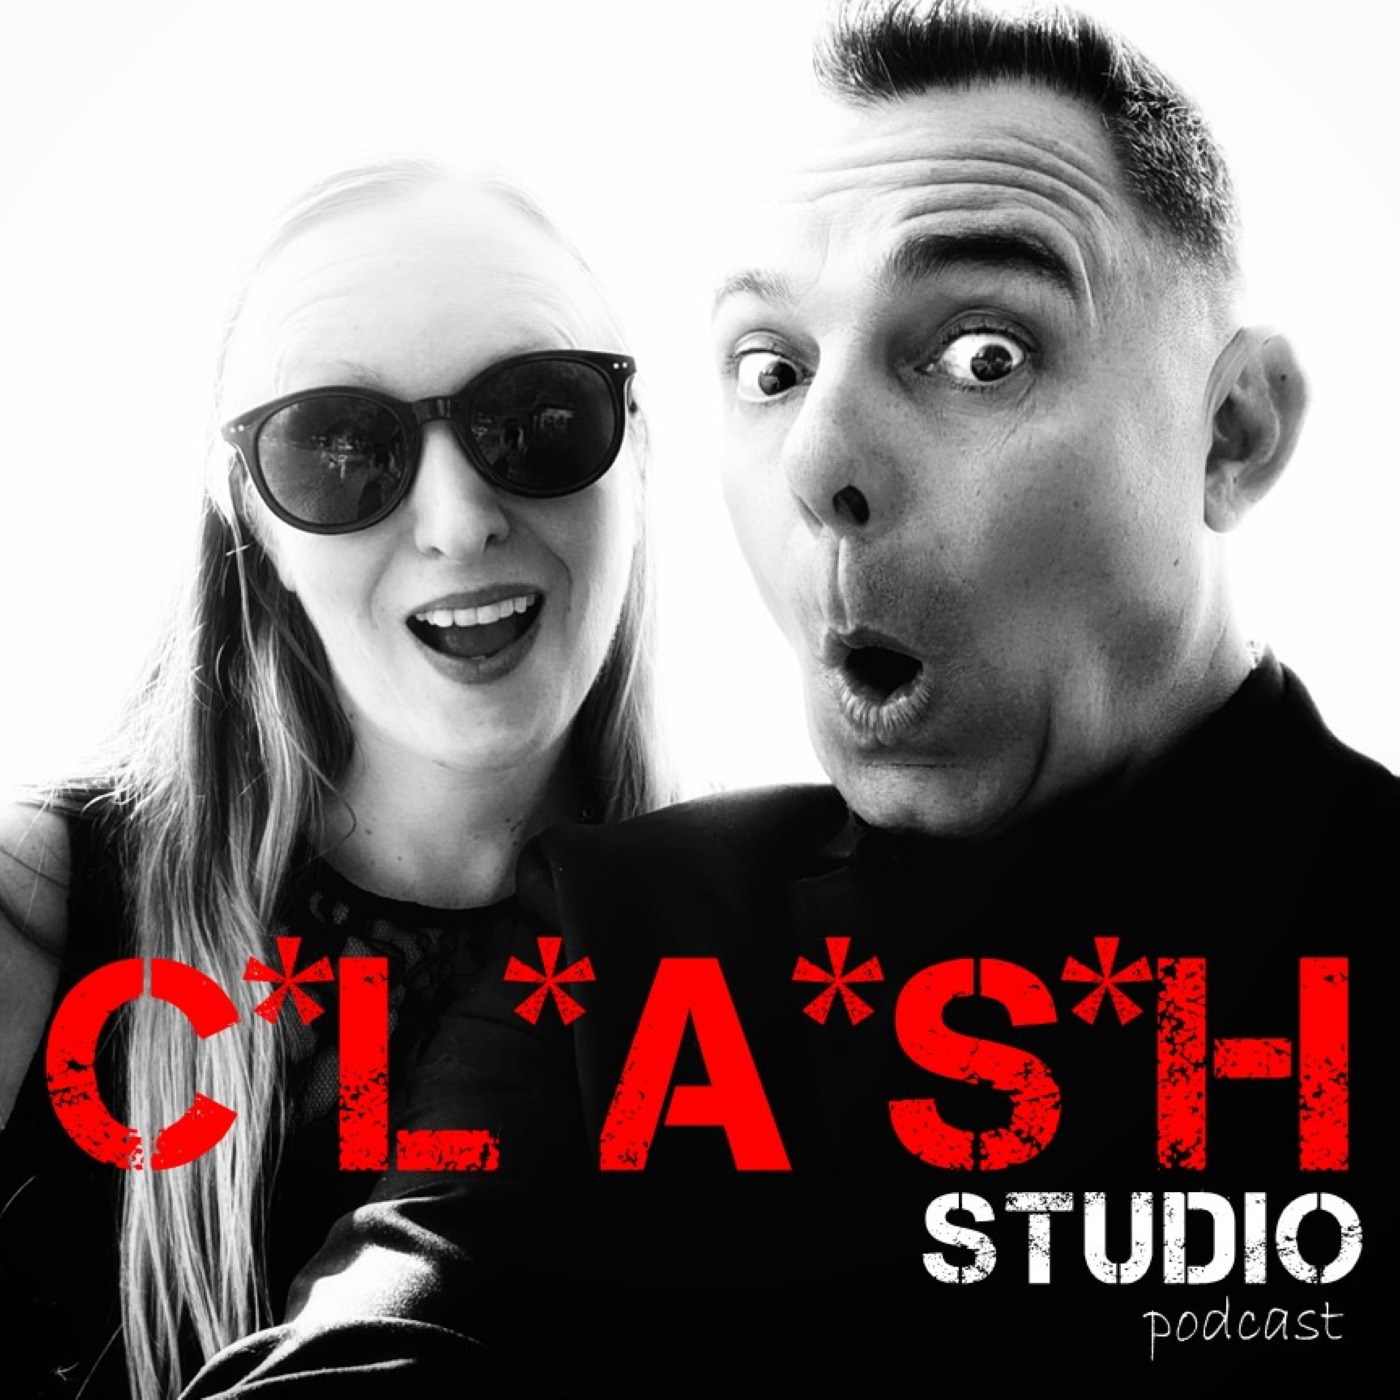 Clash Studio Podcast